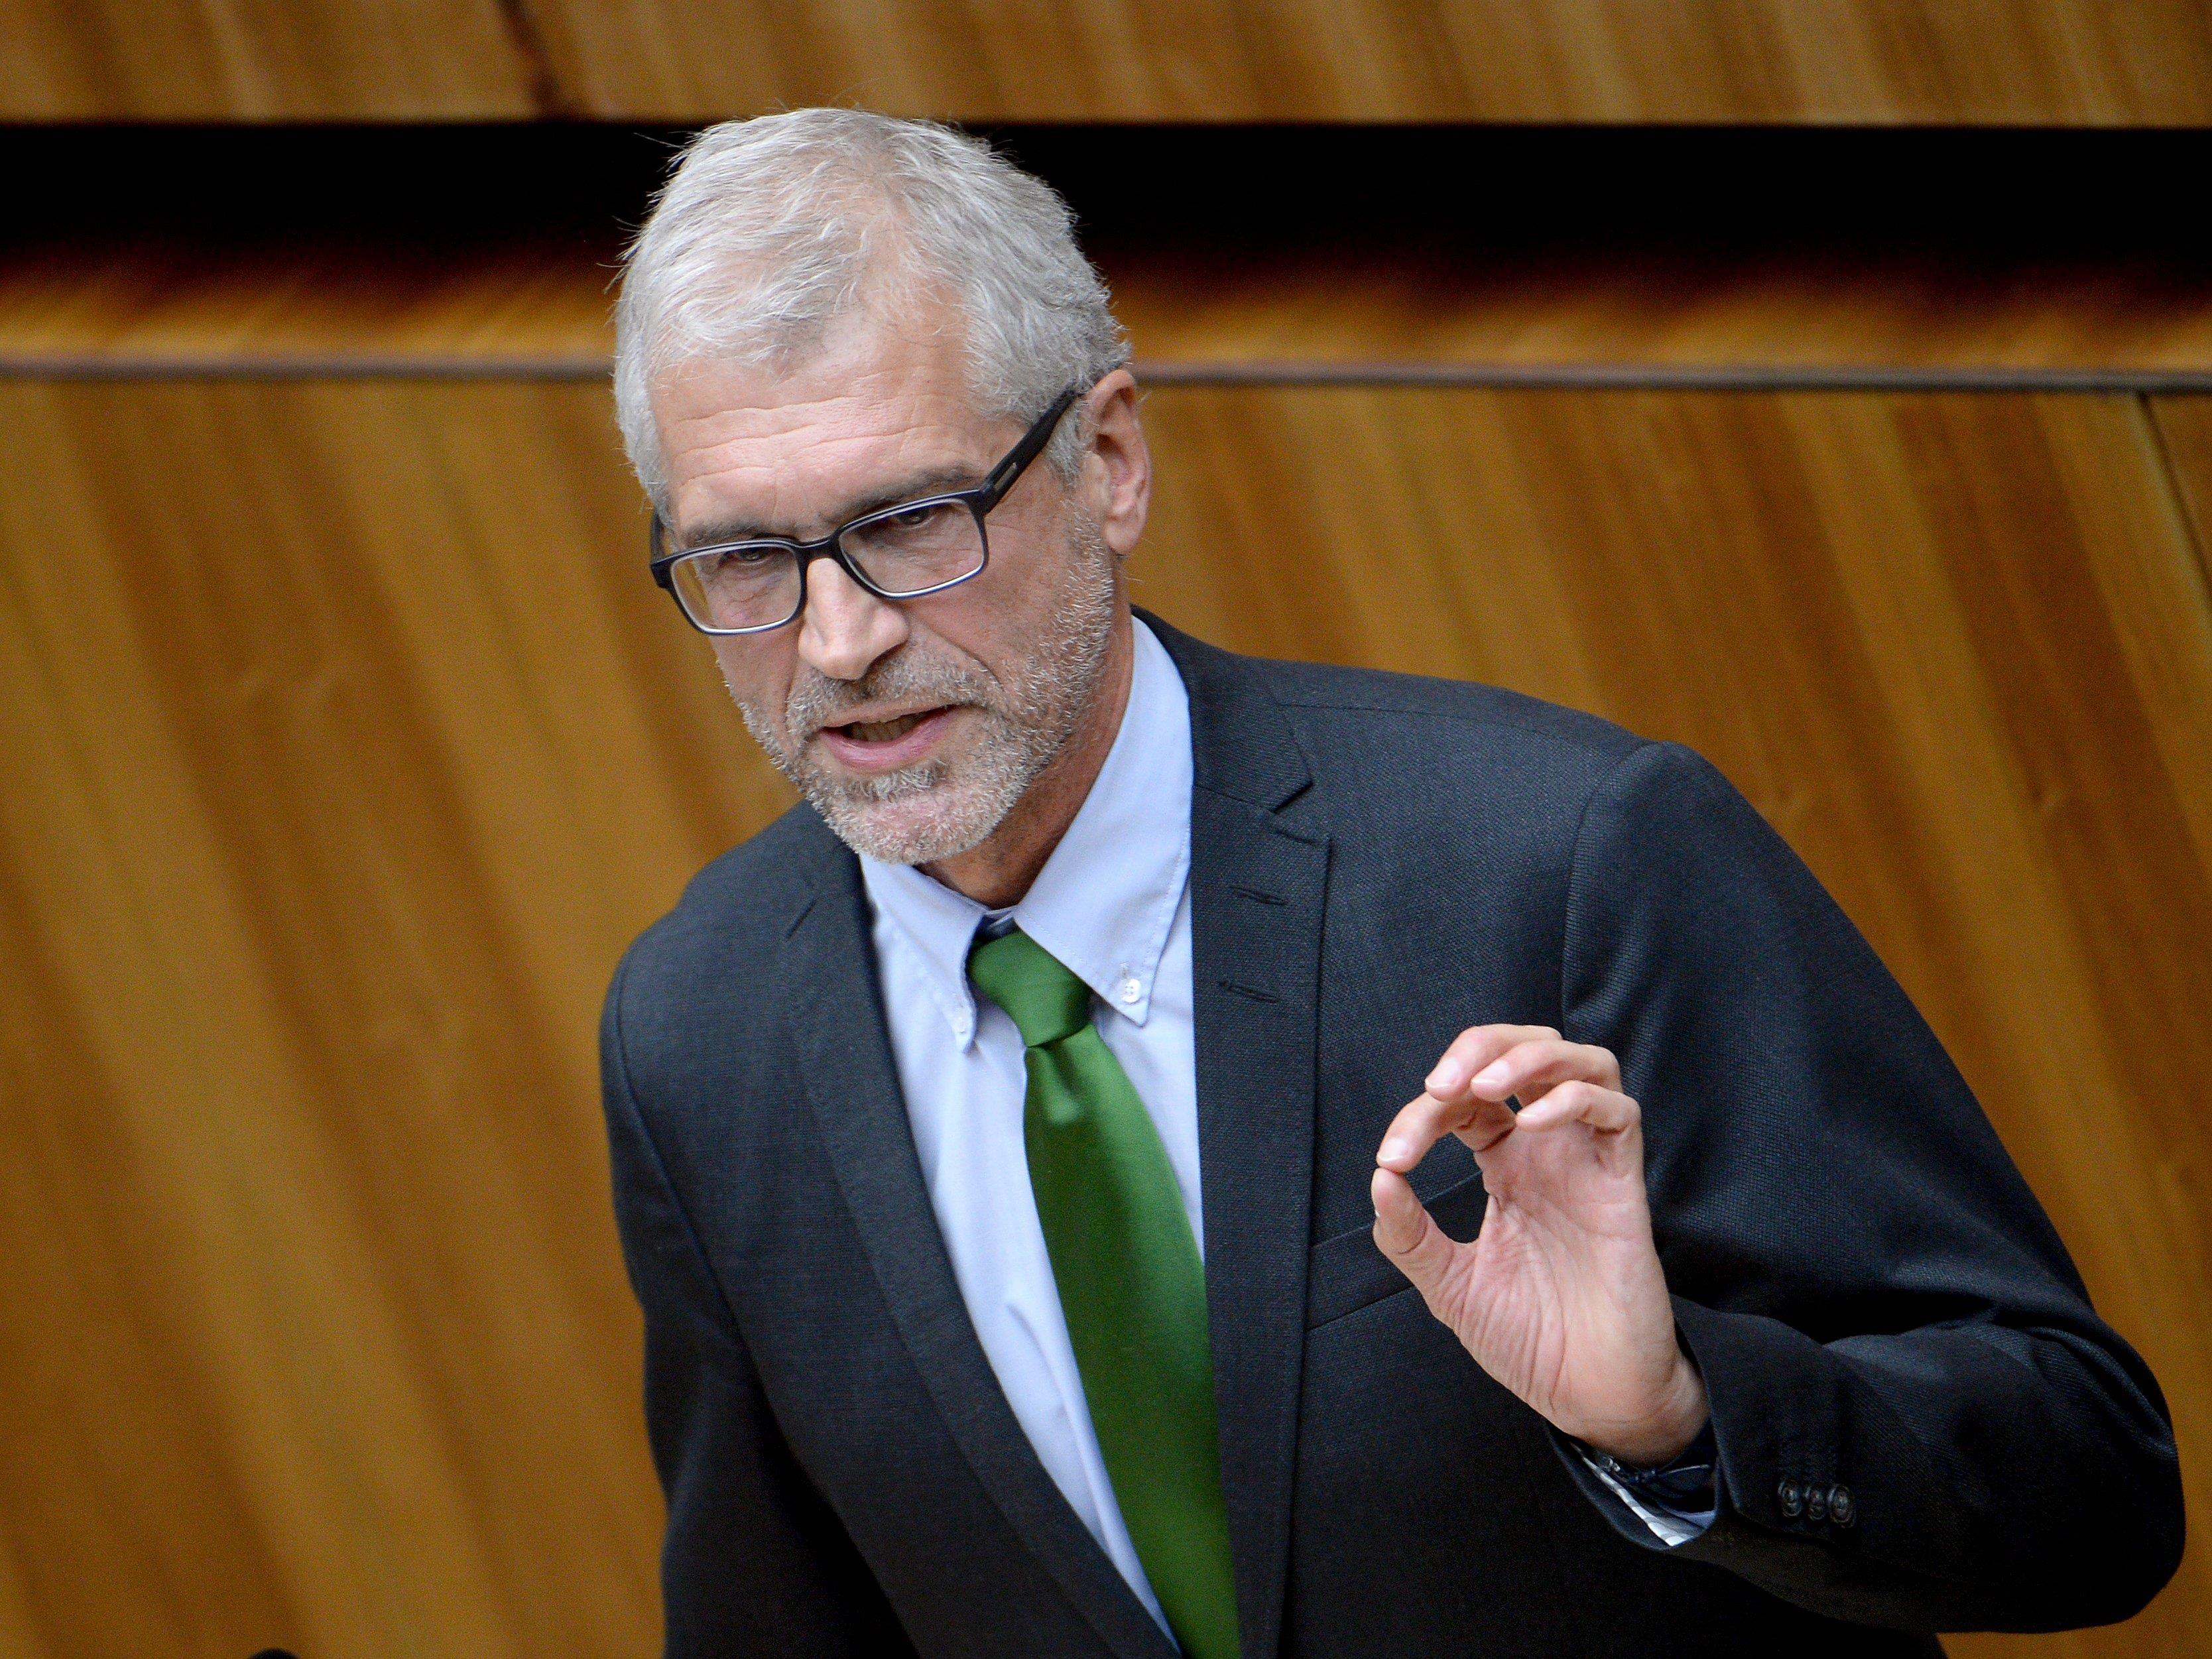 Der Vorarlberger Grünen-Abgeordnete Harald Walser fordert nach dem Streit mit der Parteijungend nun klare inhaltliche Positionen.